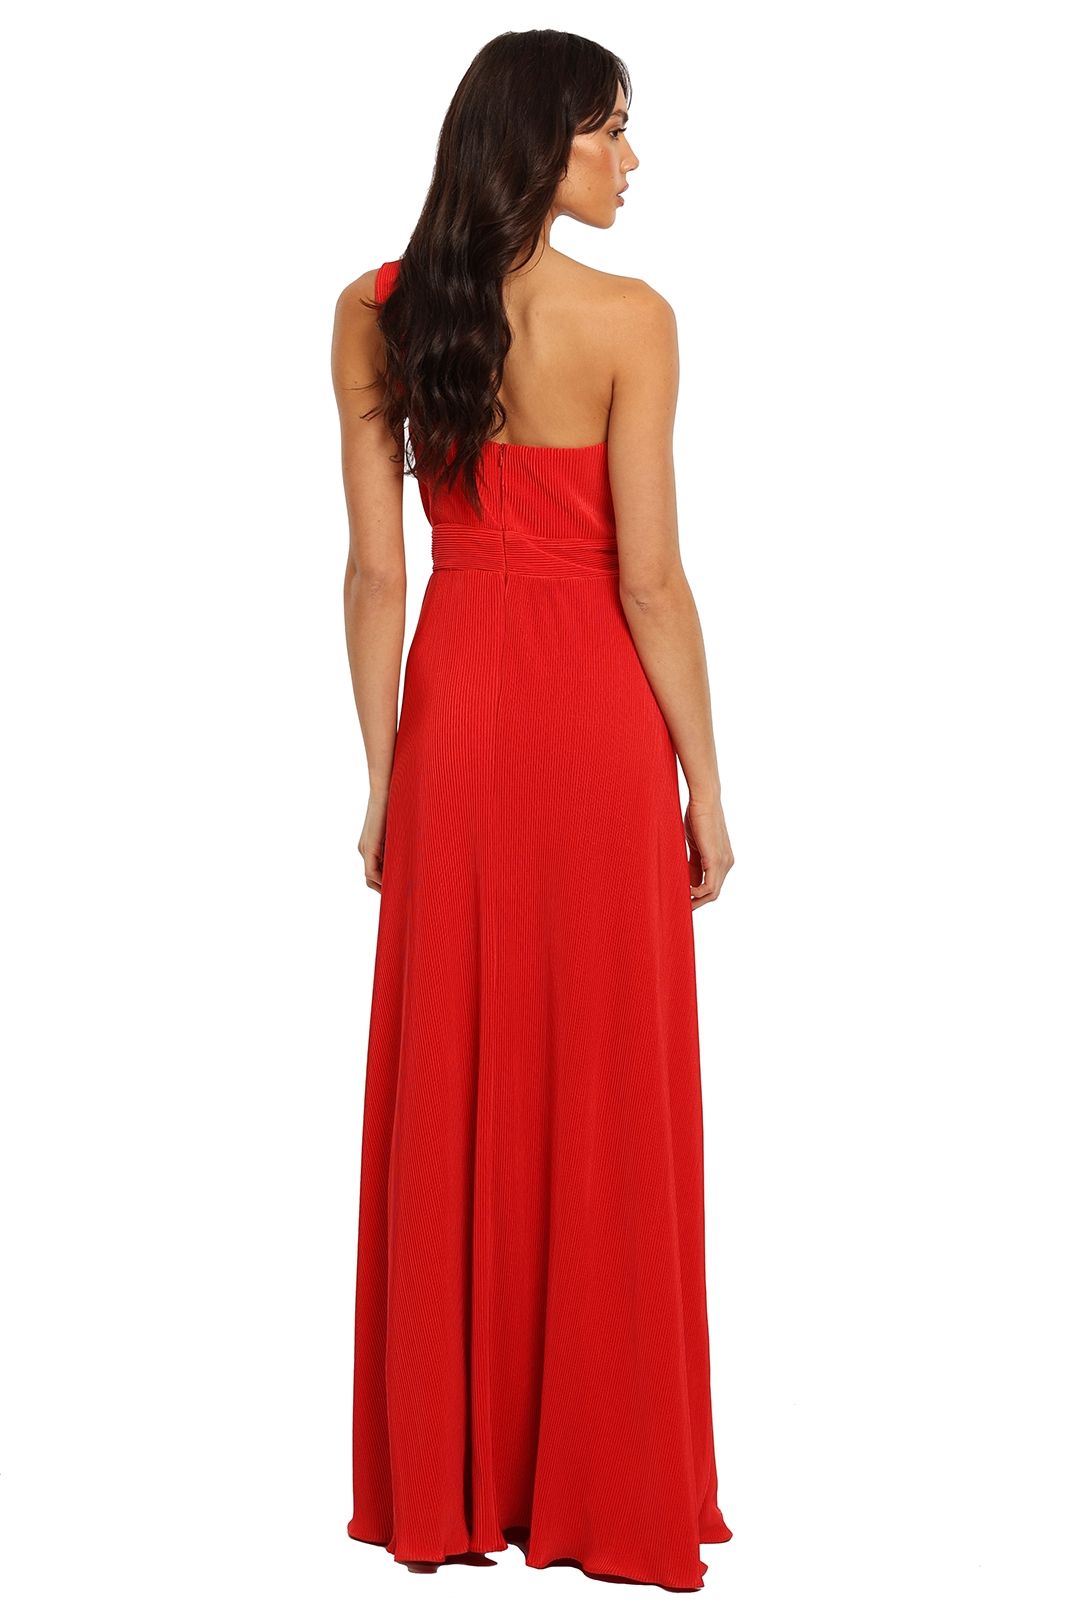 Dior Gown Red Langhem one shoulder